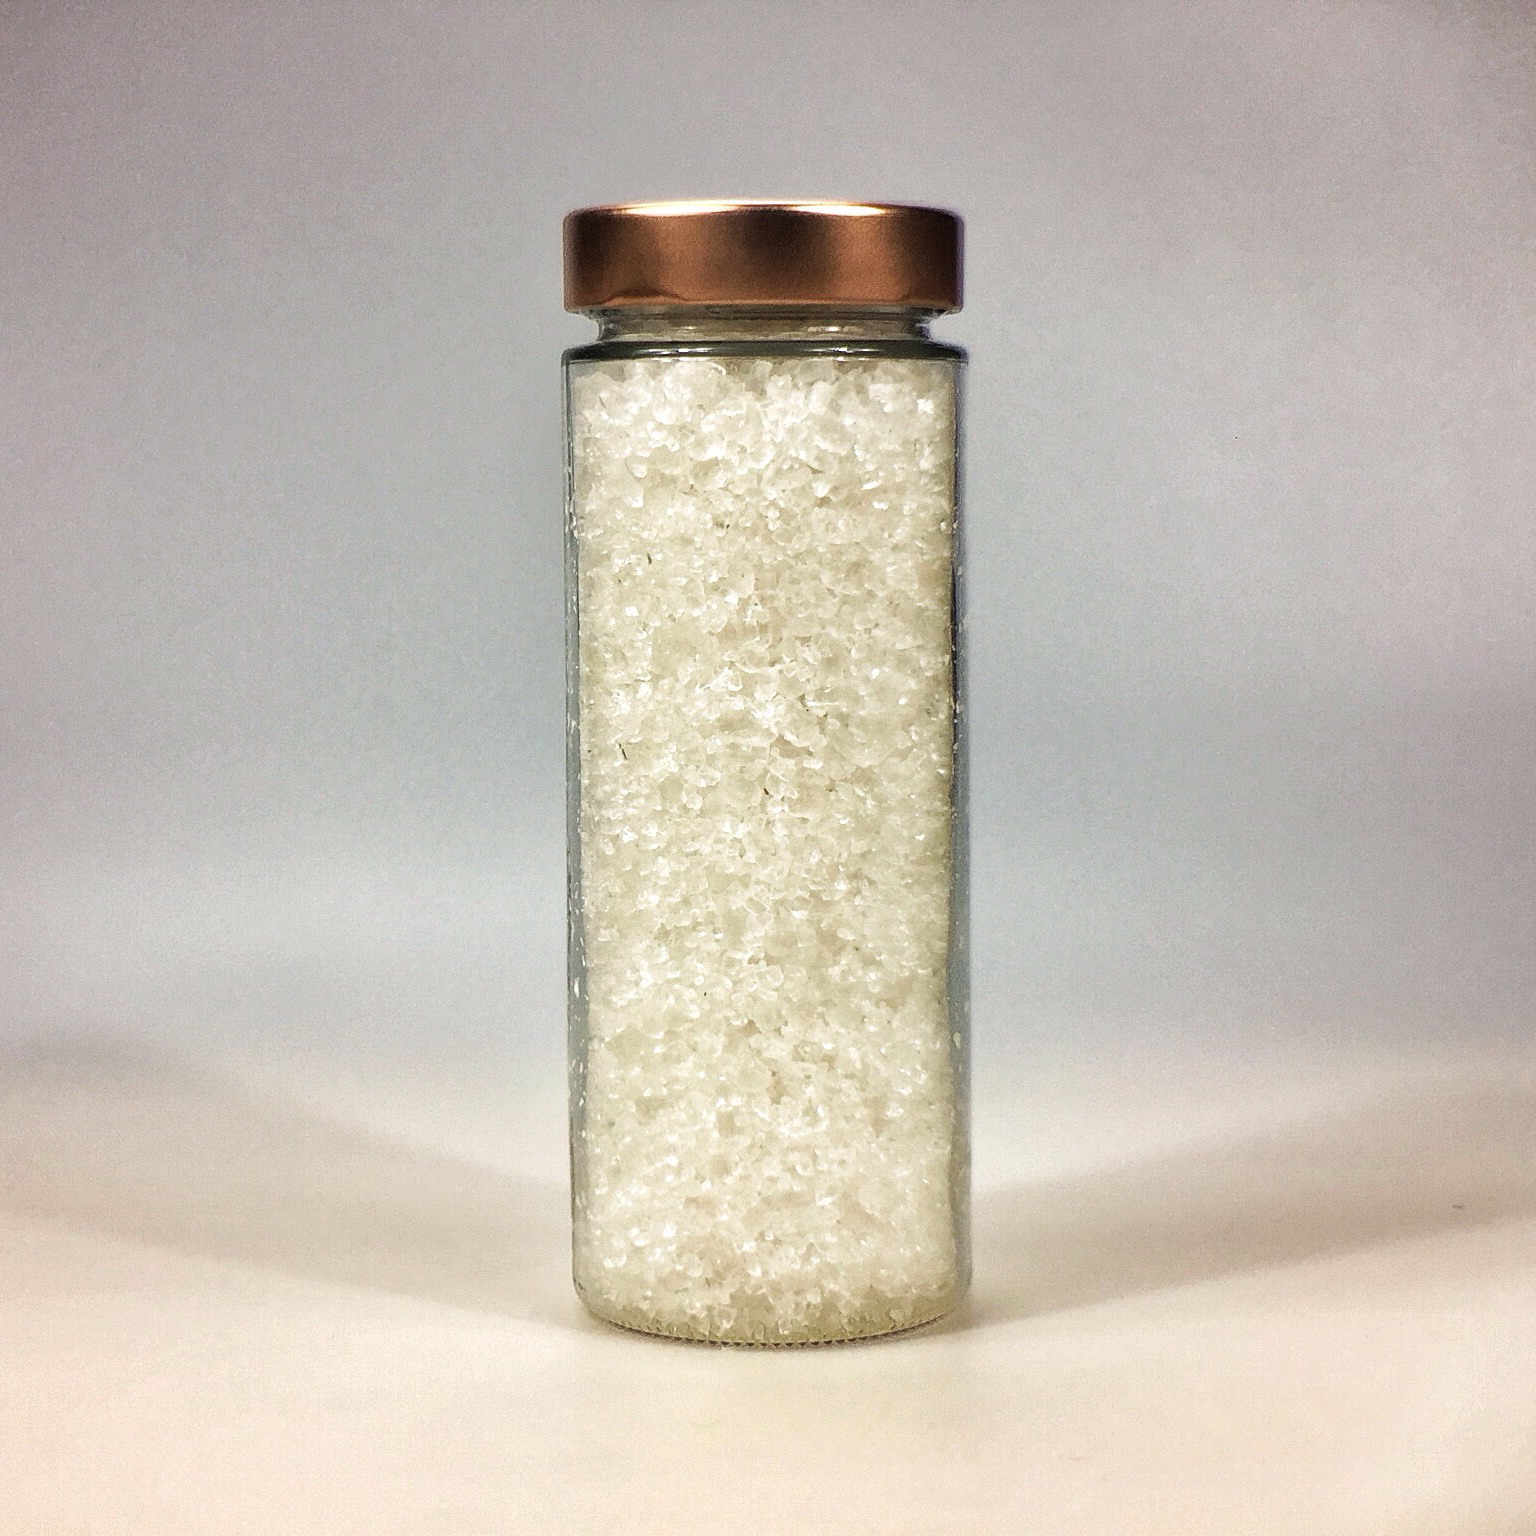 Halit Salz grob für Salzmühle im grossen Glas mit Kupferdeckel